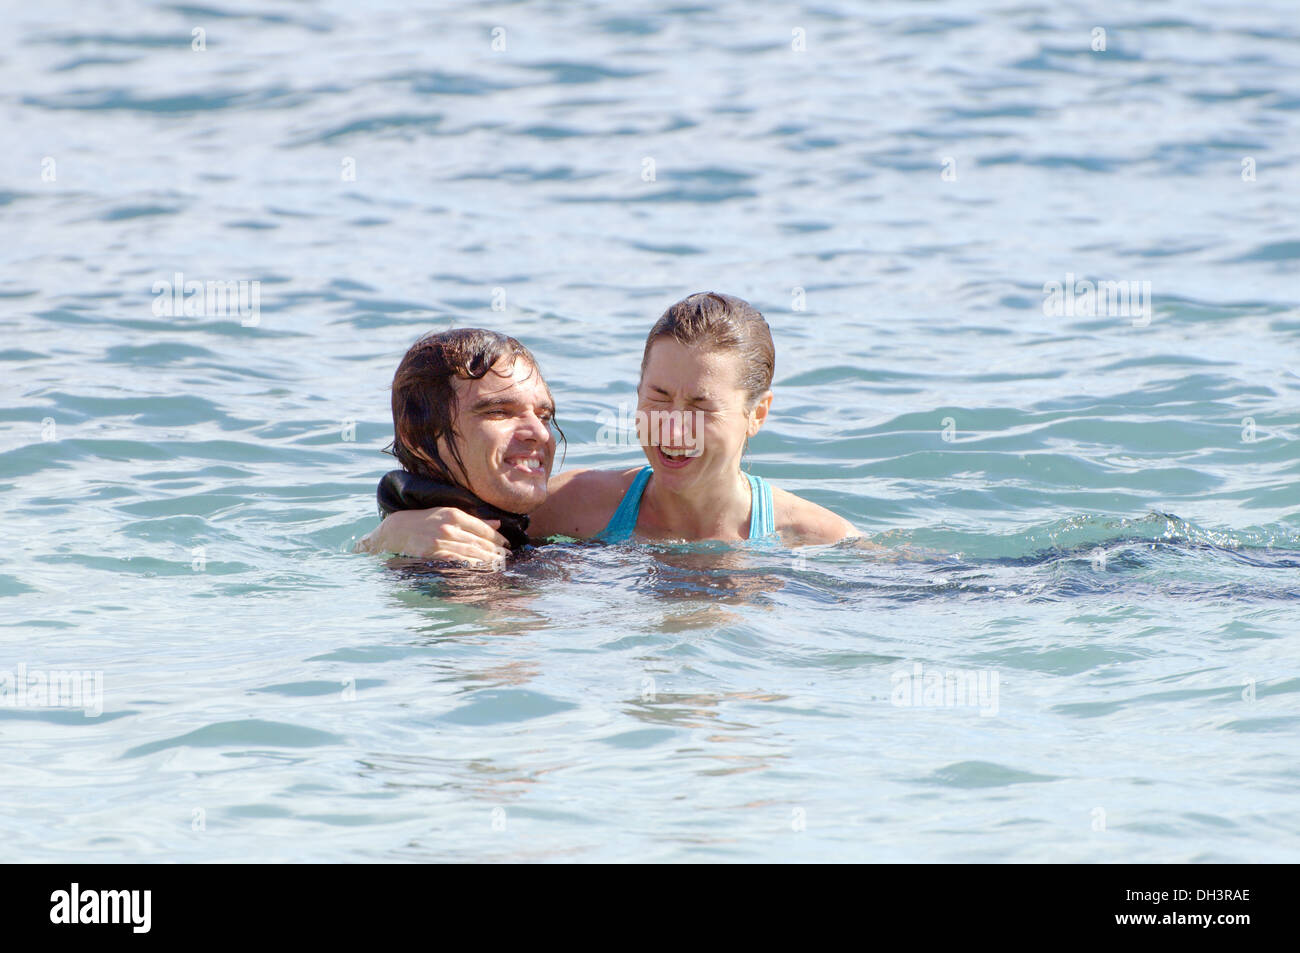 Herr und Frau im Wasser zu spielen. Griechenland, die Insel Symi Stockfoto